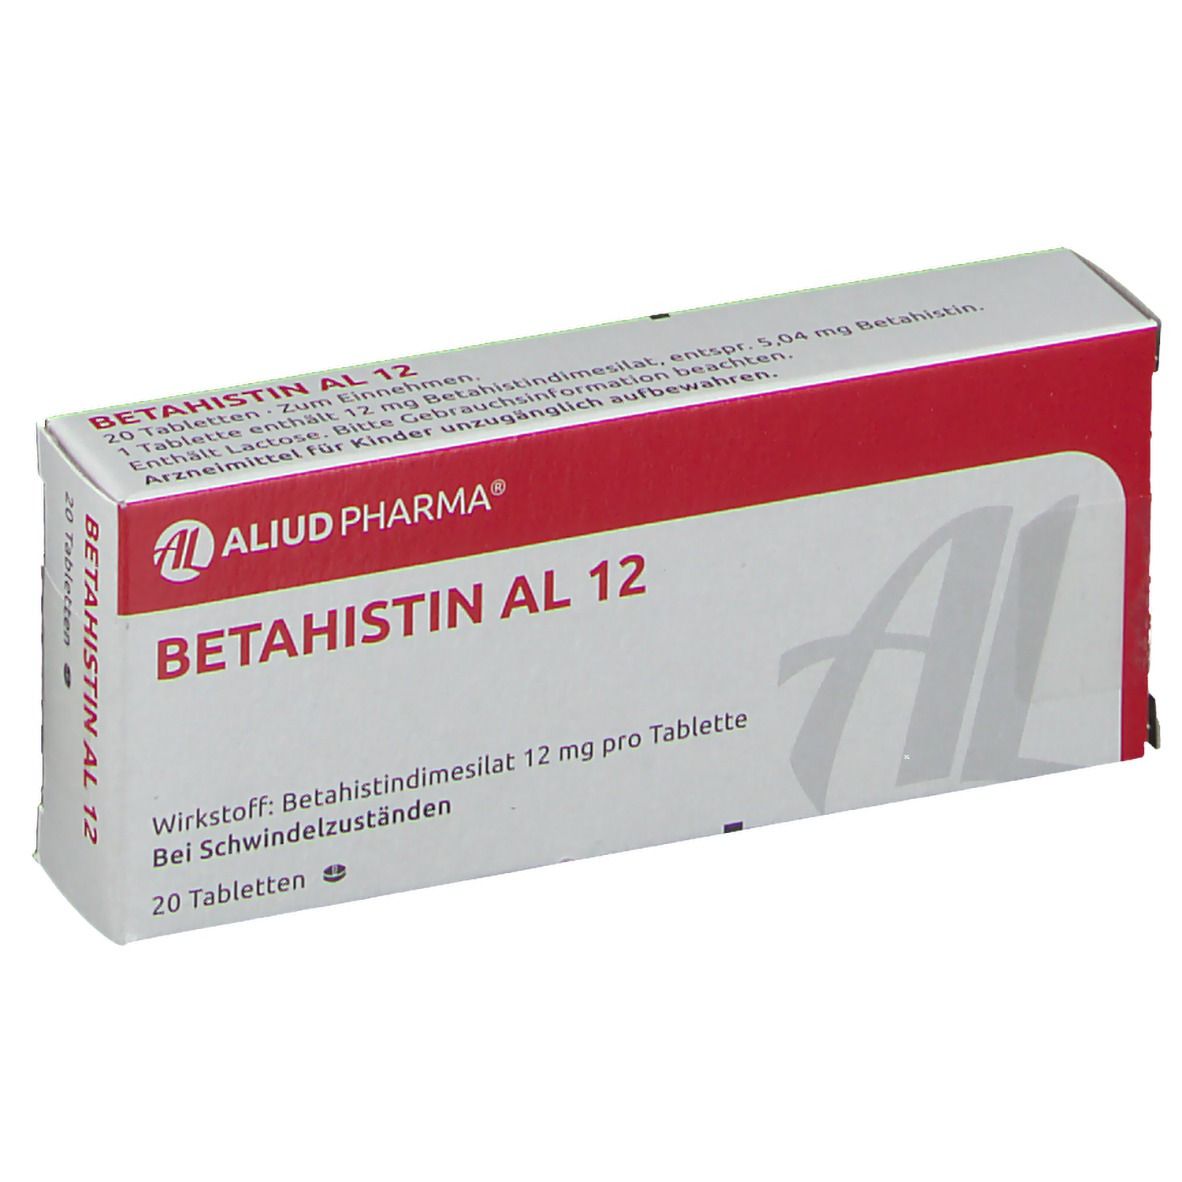 Betahistin AL 12